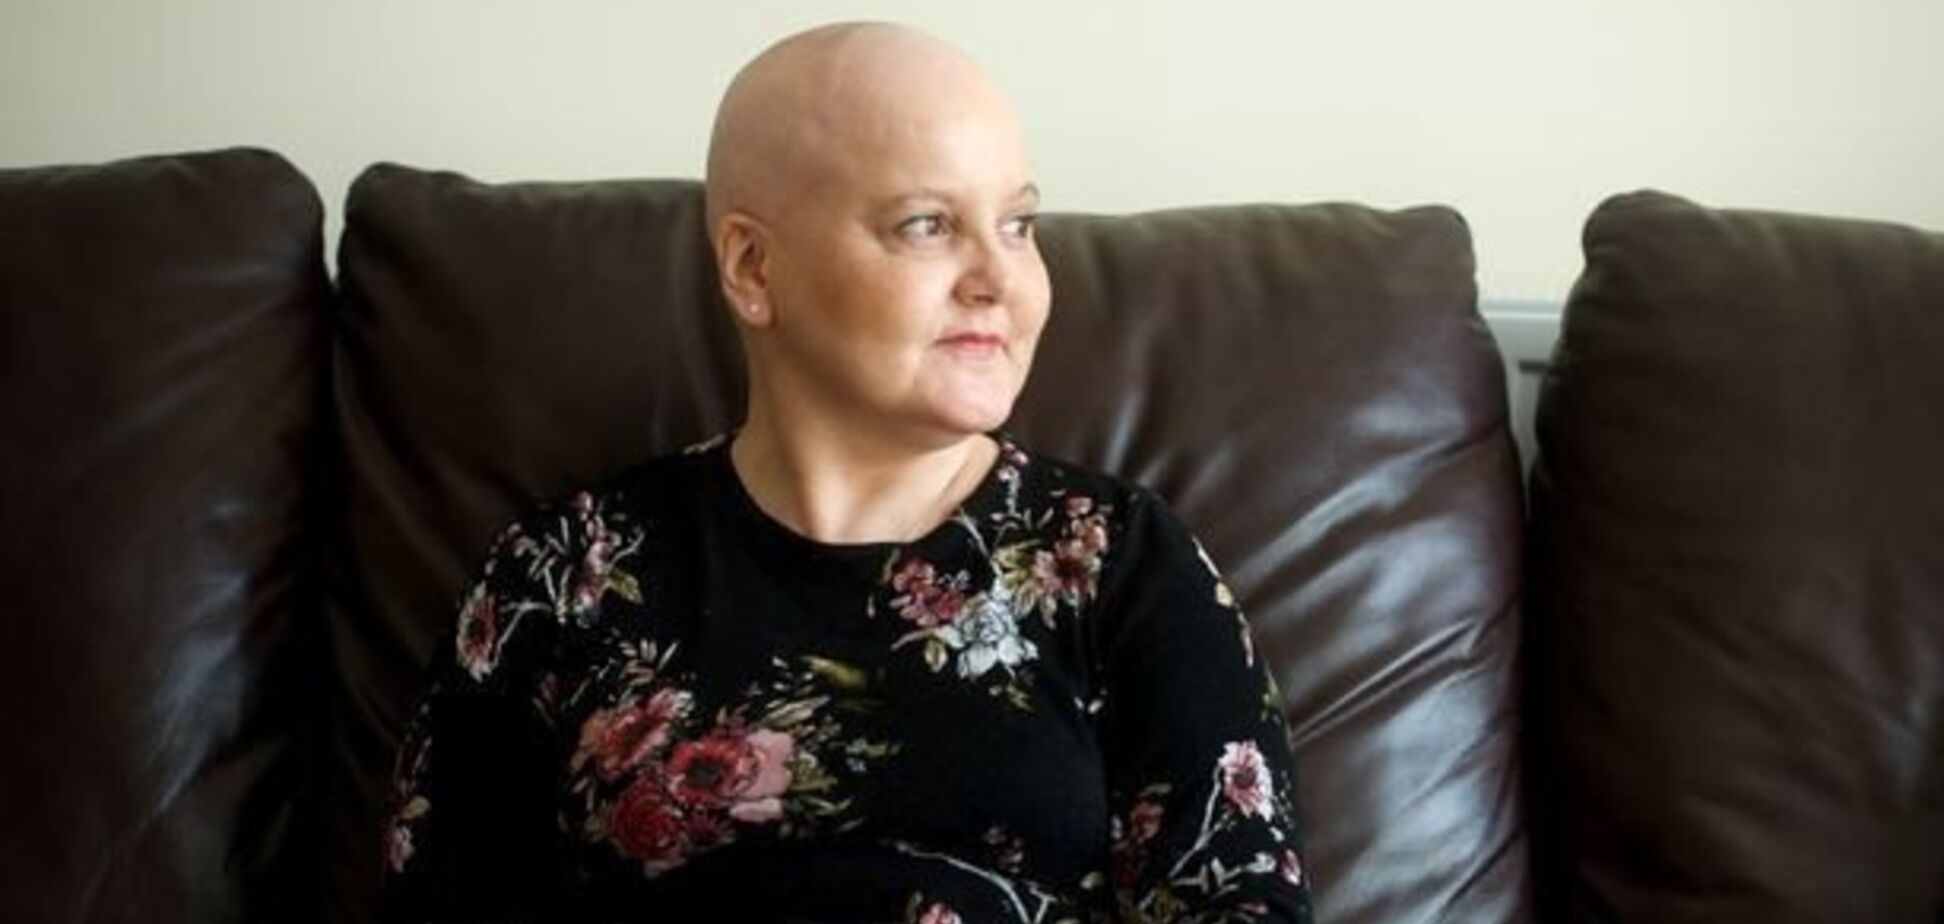 'Ви здорові!' Убита раком жінка залишила зухвале послання лікарям. Відео